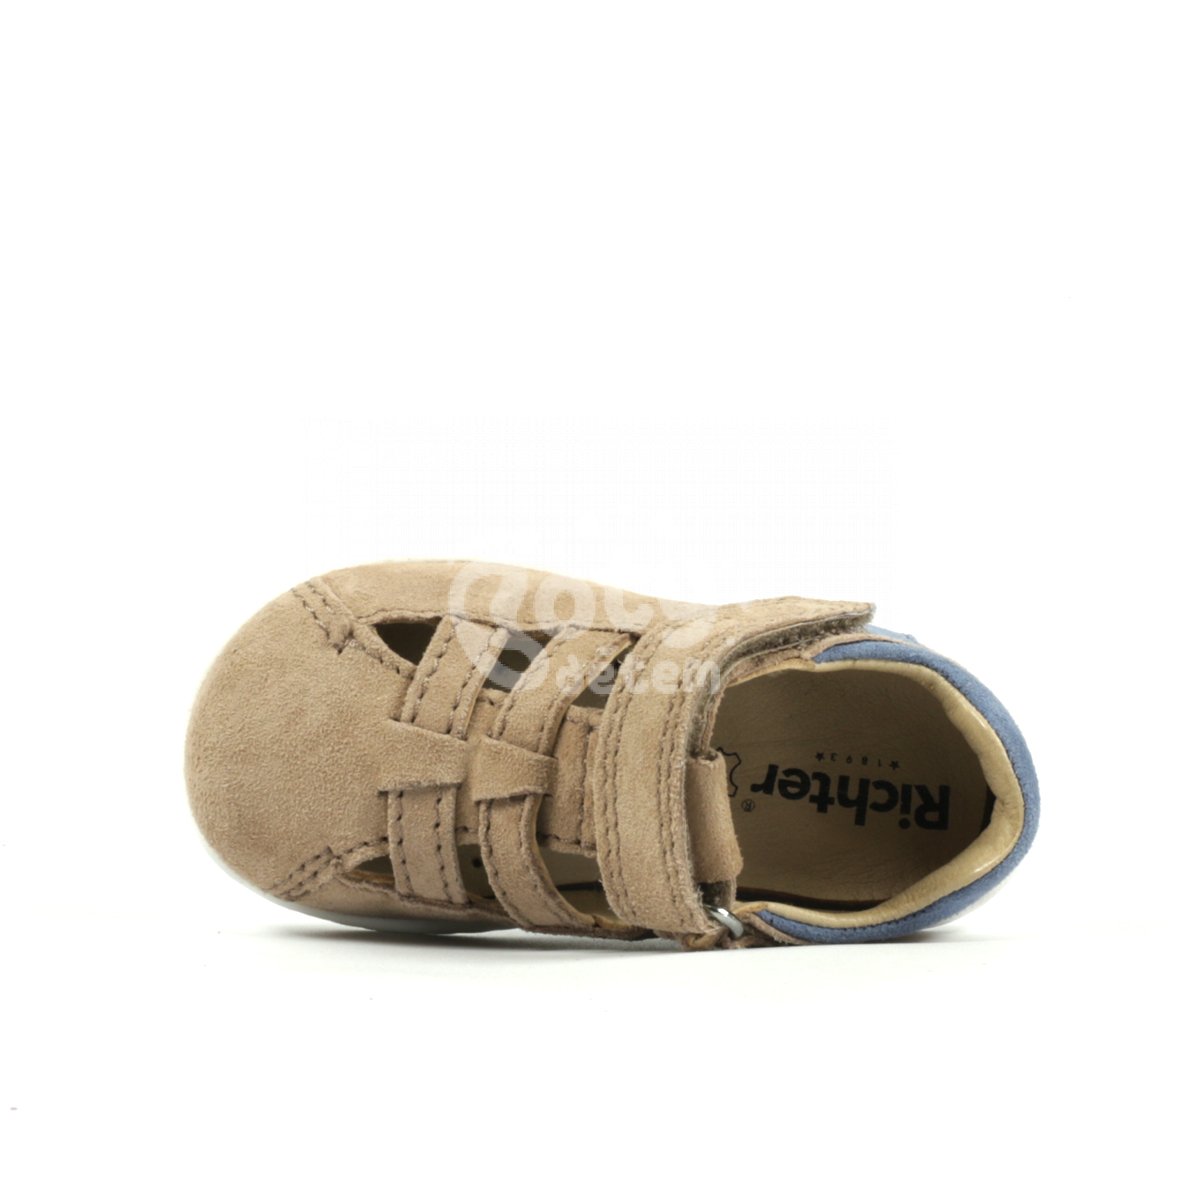 Kožená obuv Ilvy Richter 1552-7212-2101 crepe